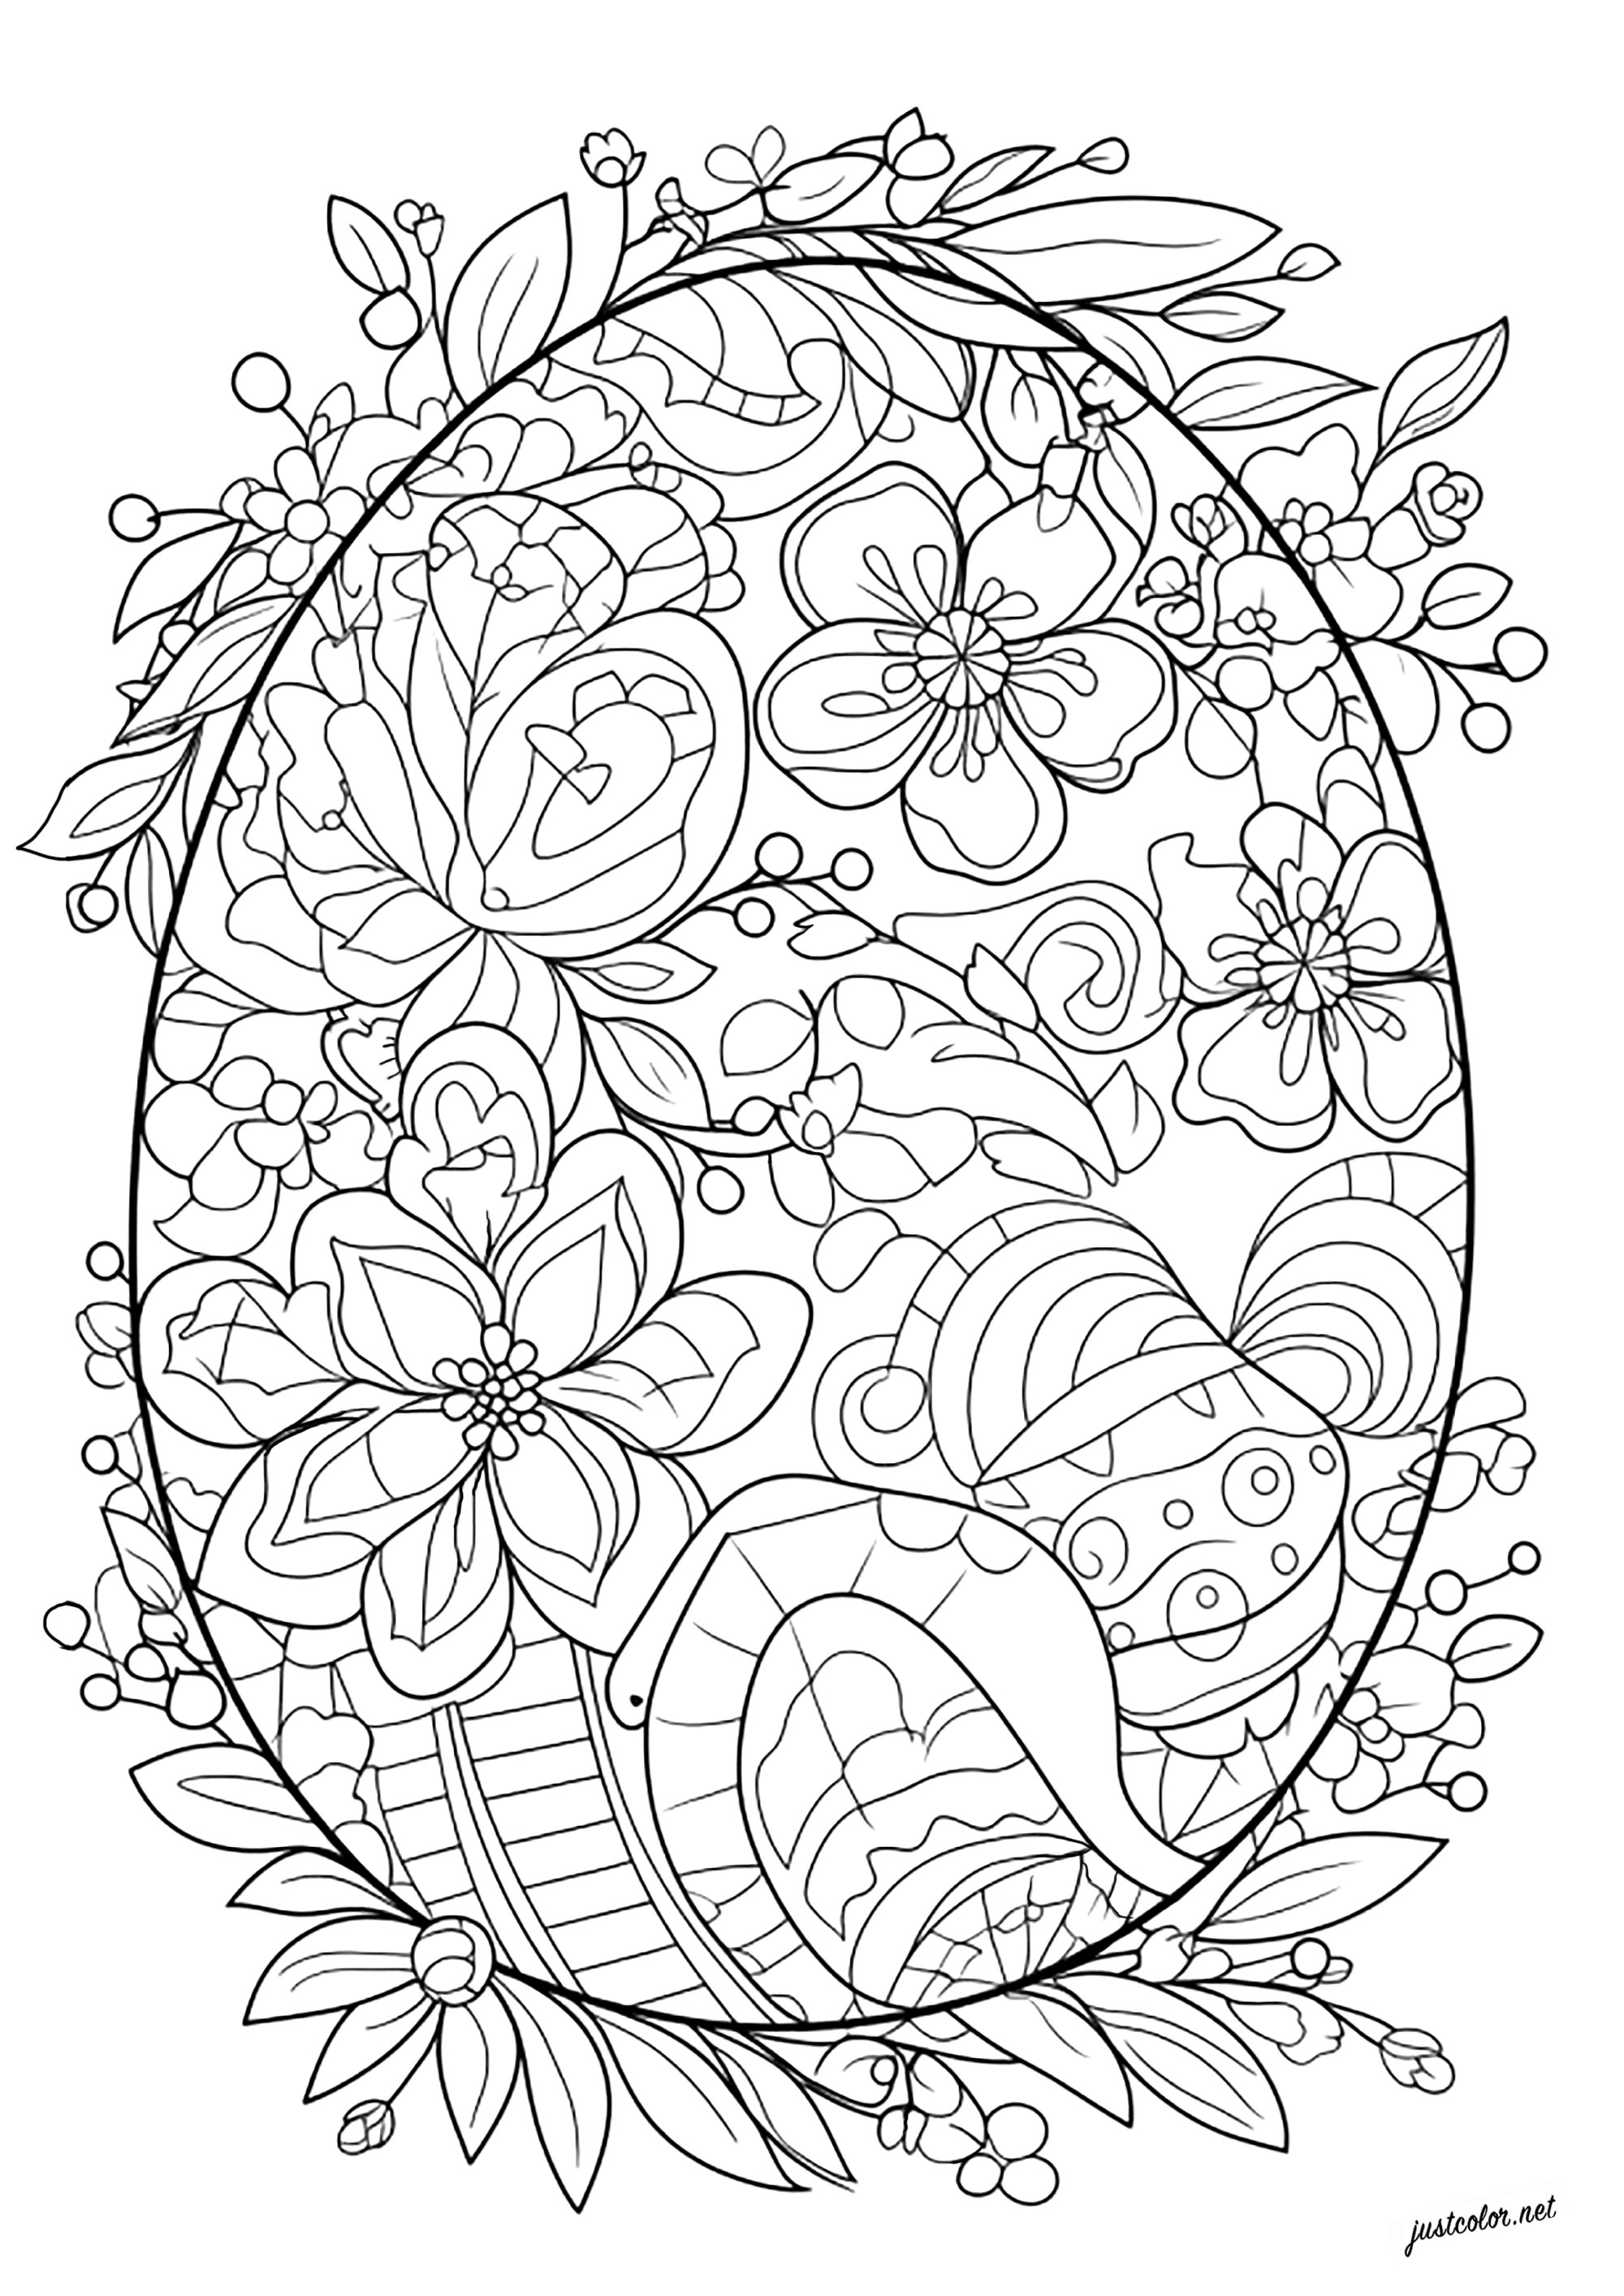 Coloriage unique d'un oeuf de Pâques. Nombreuses fleurs et feuilles à colorier dans ce bel oeuf de Pâques